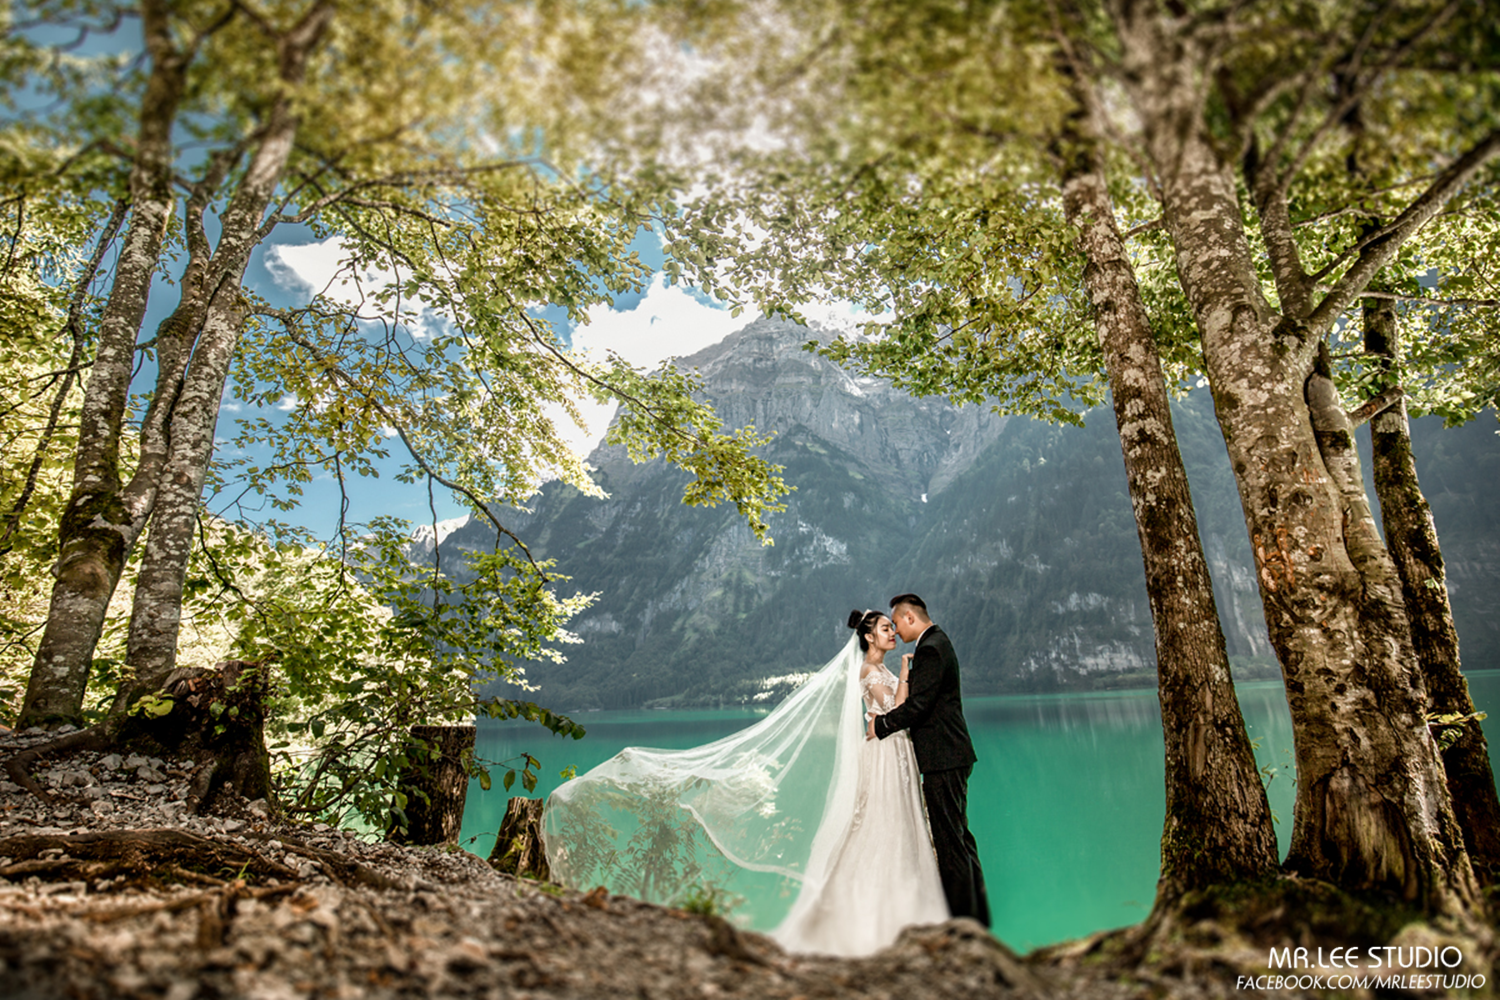 |BAOMOI.COM| Ảnh cưới đẹp như tranh vẽ giữa trời Âu của đôi Việt kiều Đức